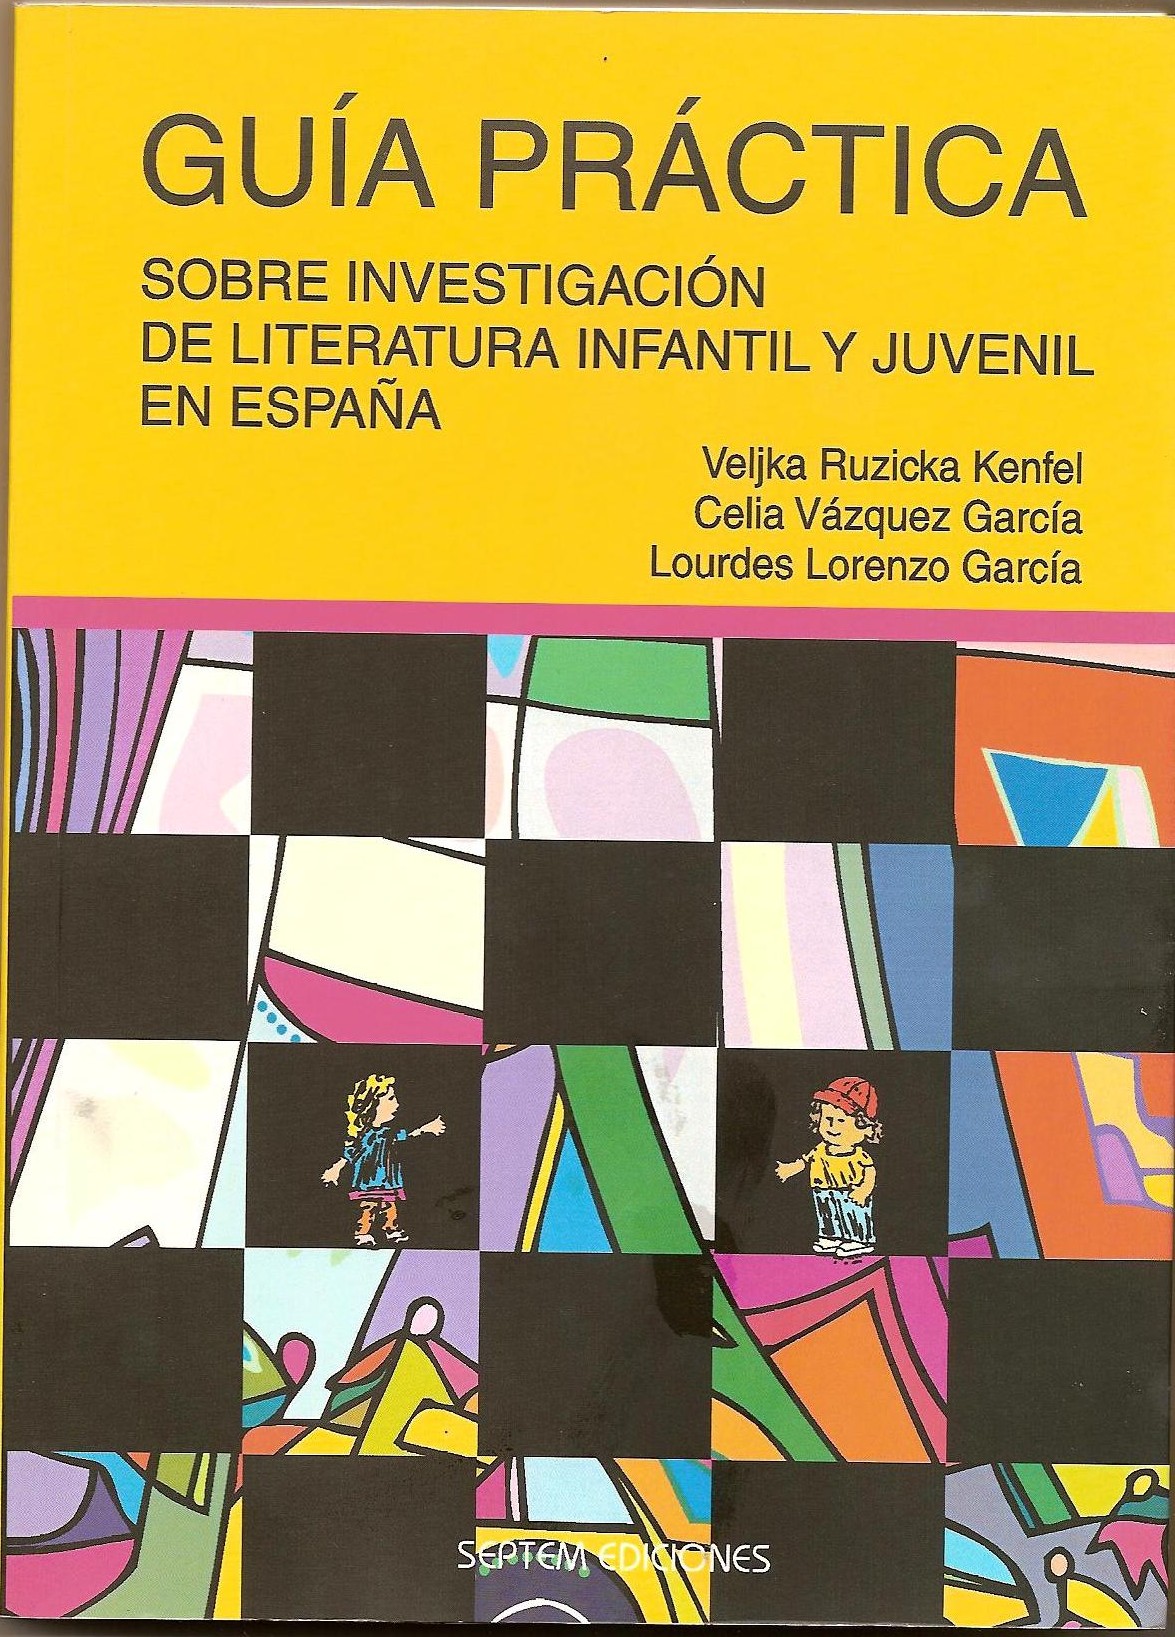 Imagen de portada del libro Guía práctica sobre investigación de literatura infantil y juvenil en España